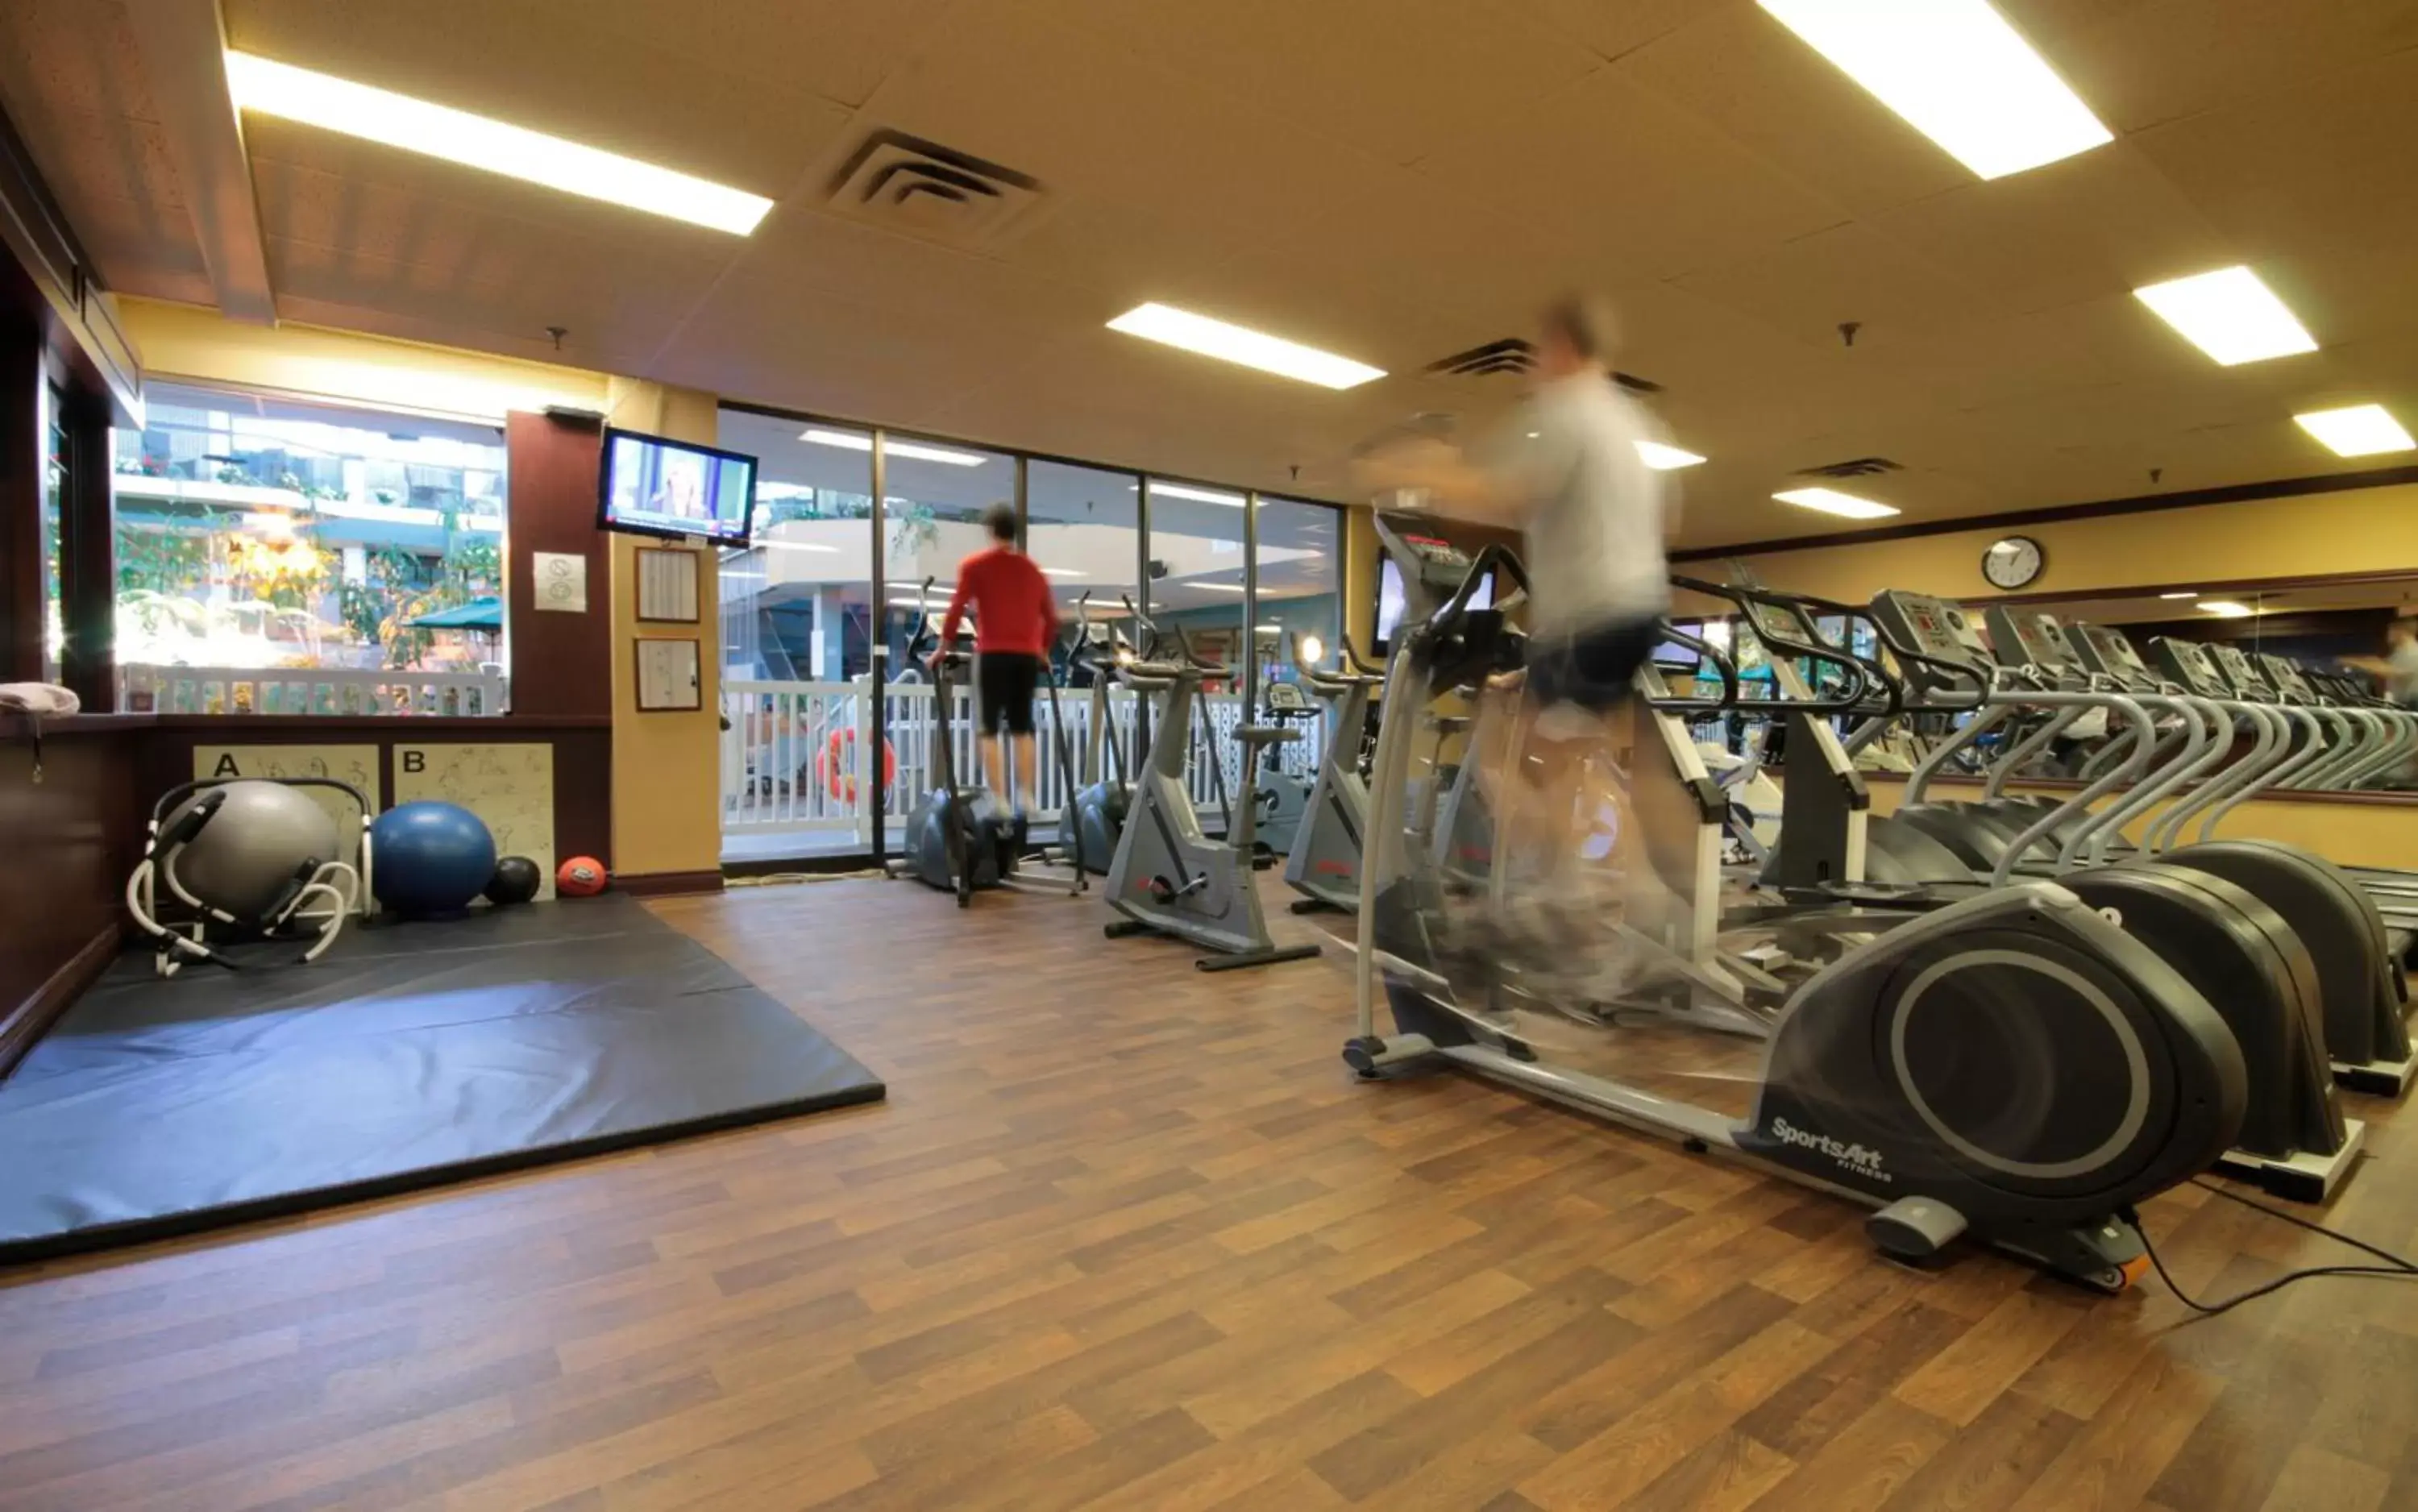 Fitness centre/facilities, Fitness Center/Facilities in Hôtel Québec Inn